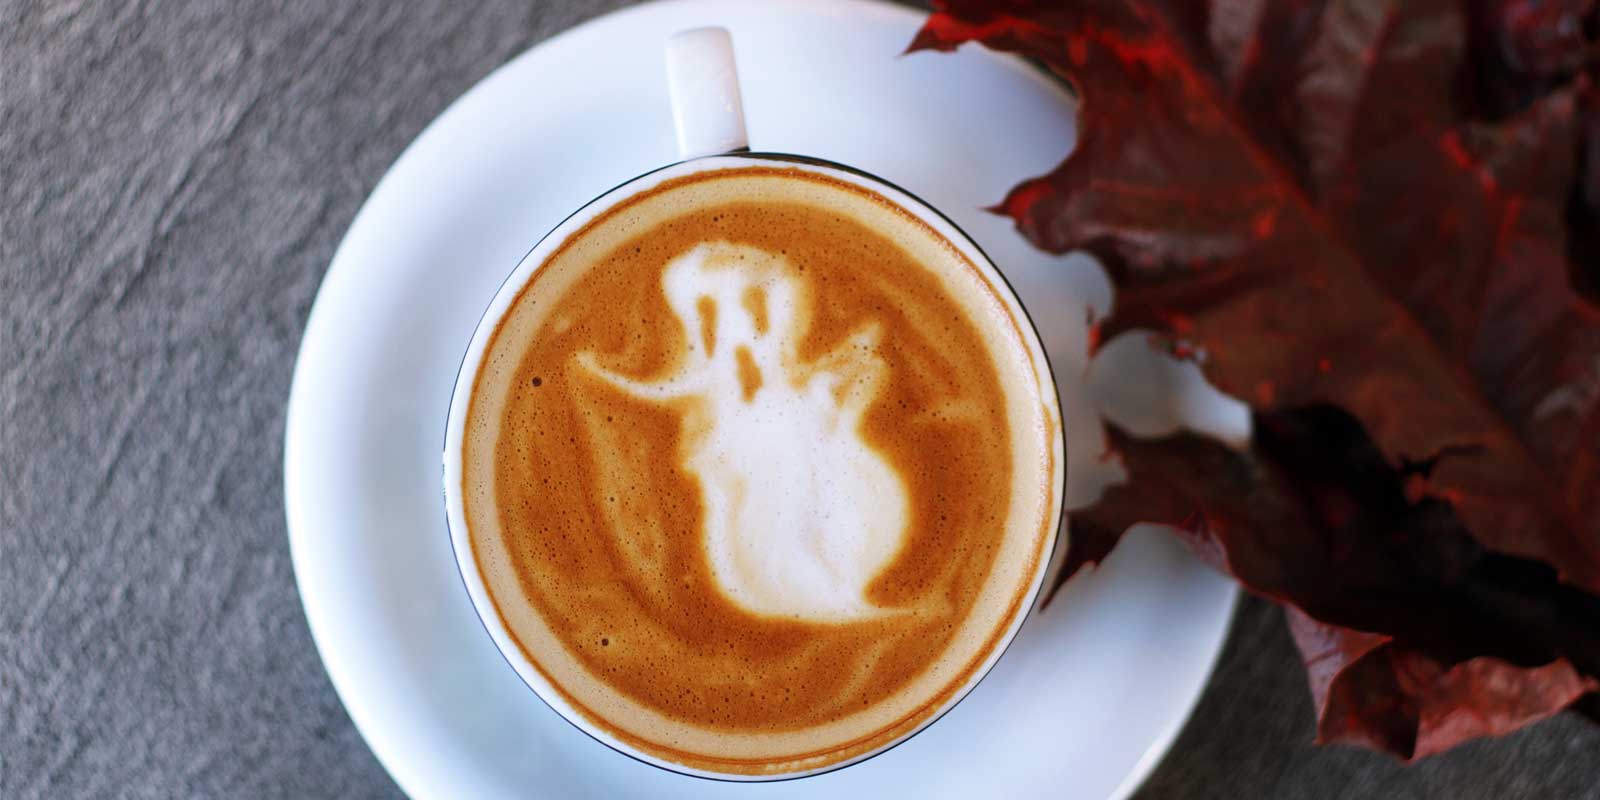 Coffee foam in shape of ghost